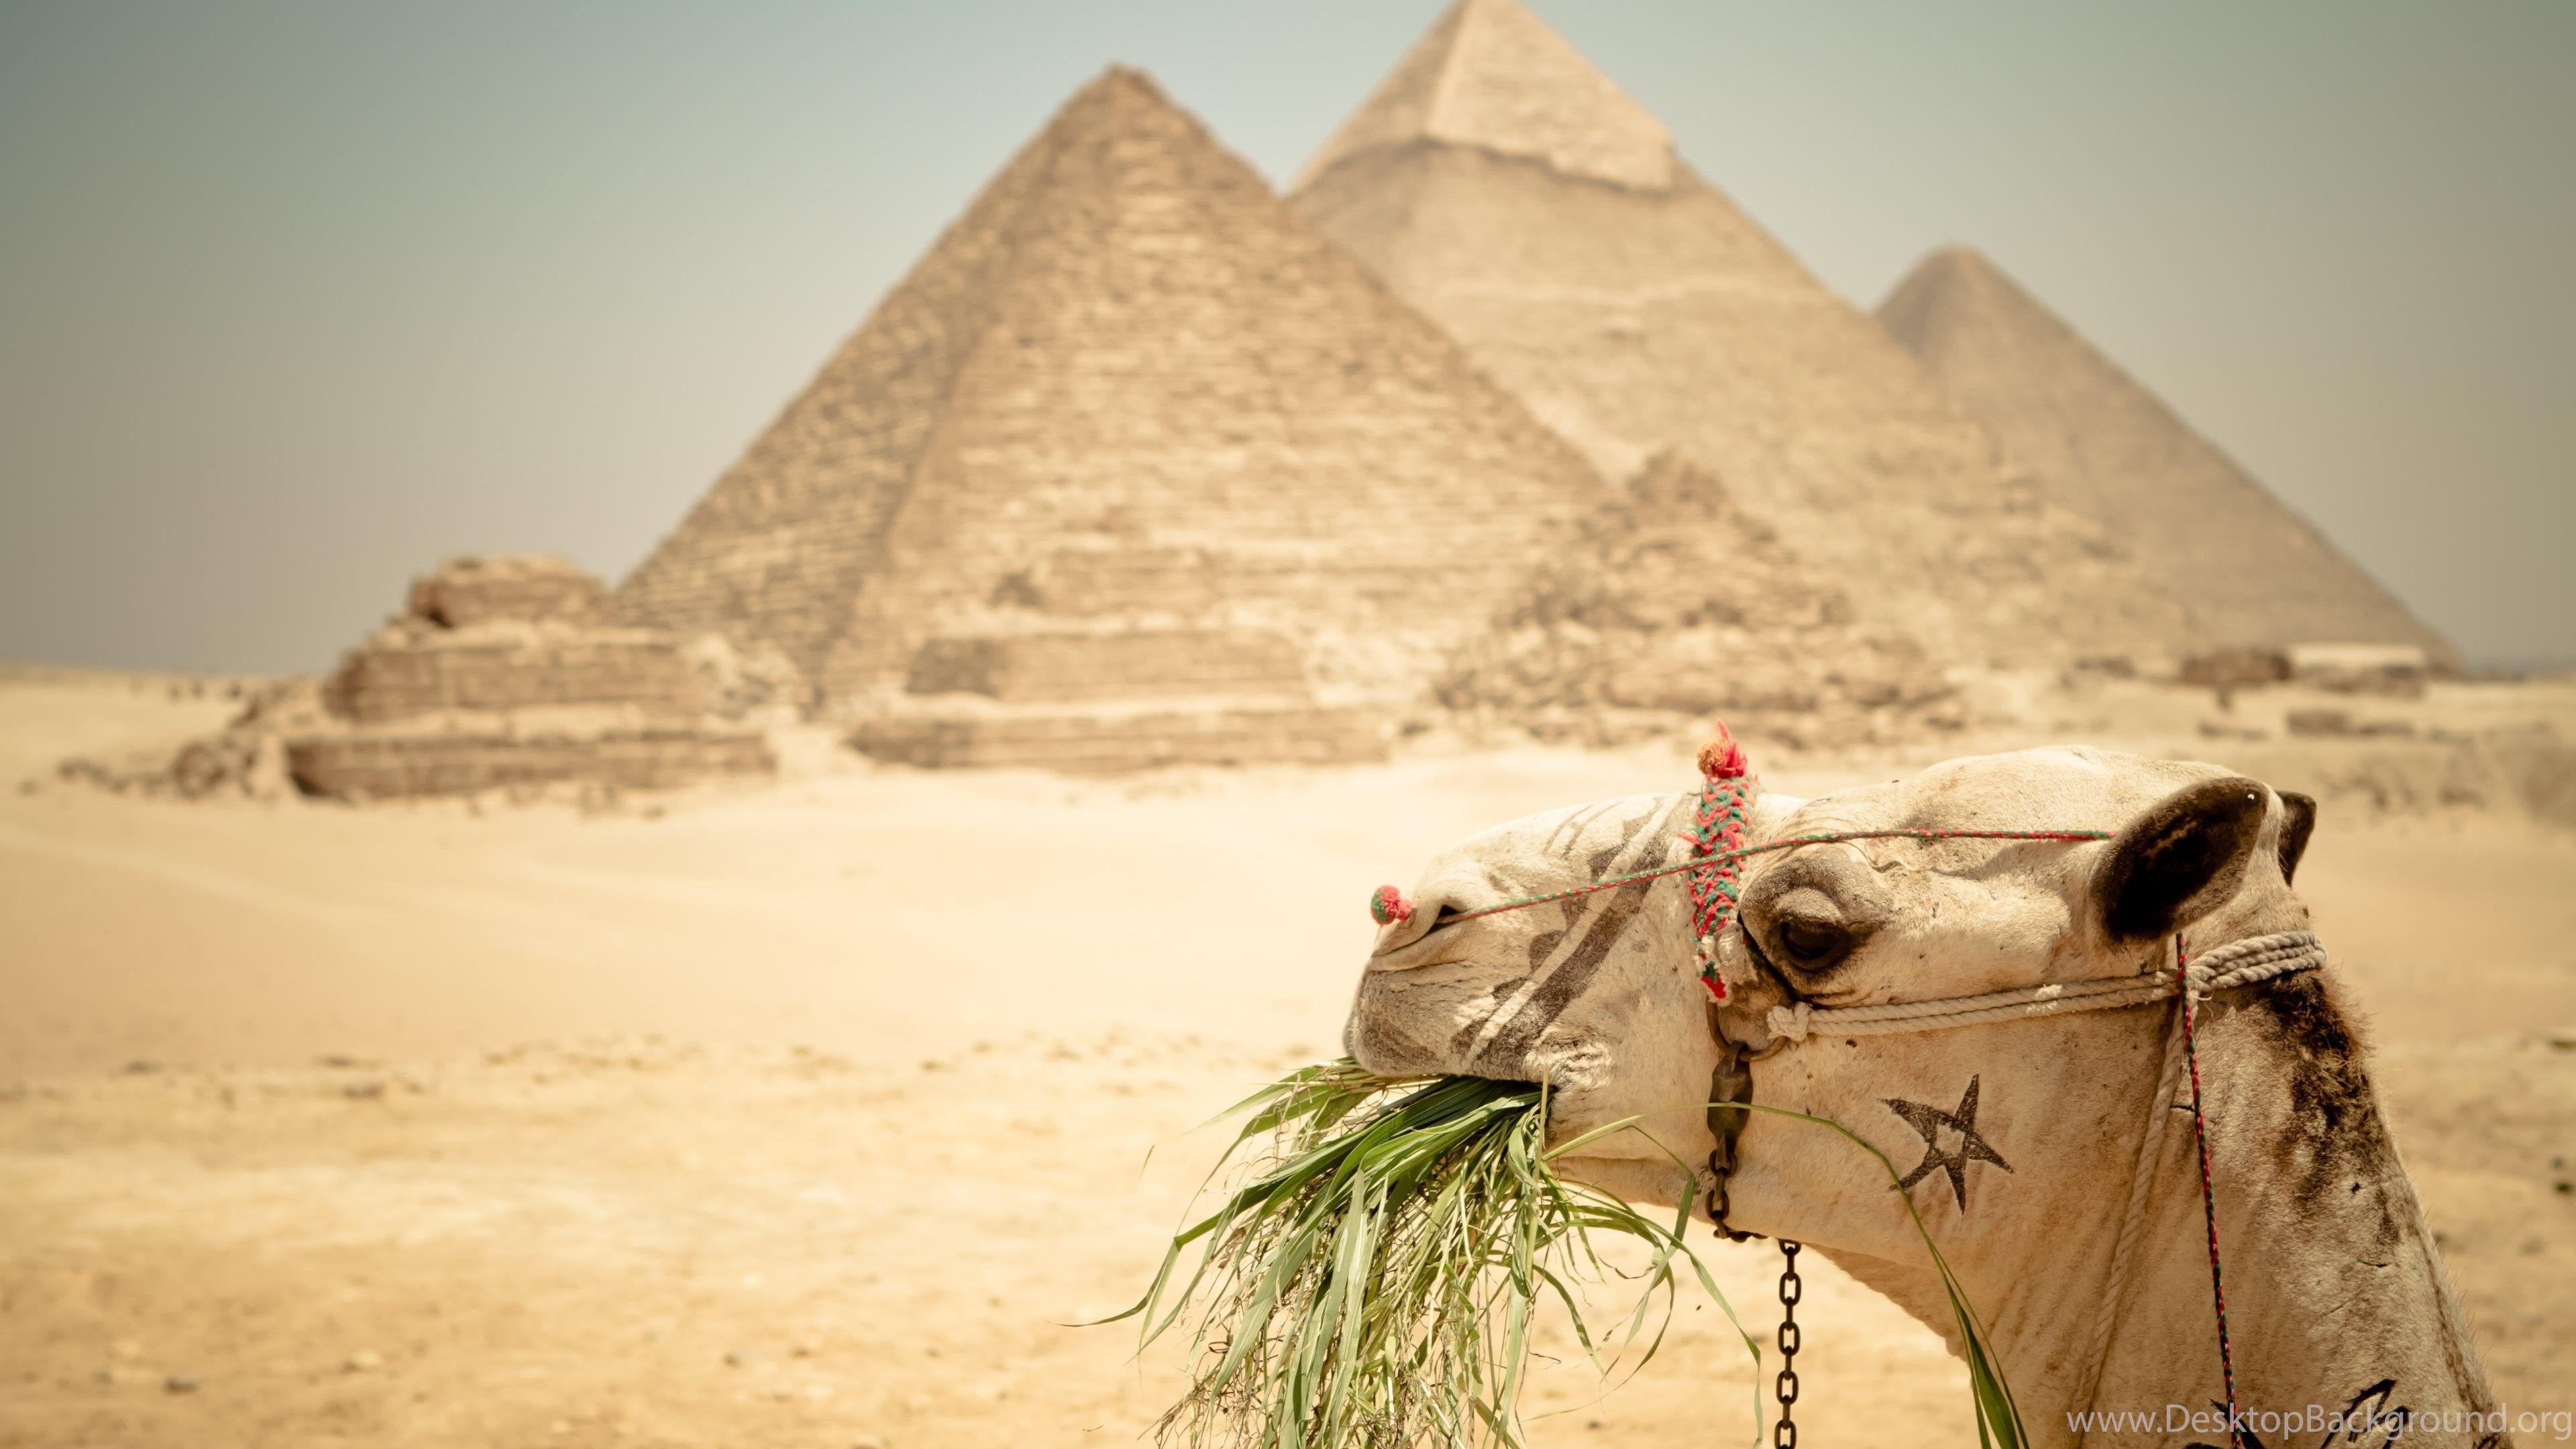 Pyramids Of Egypt Wallpaper - HD Wallpaper Desktop Background